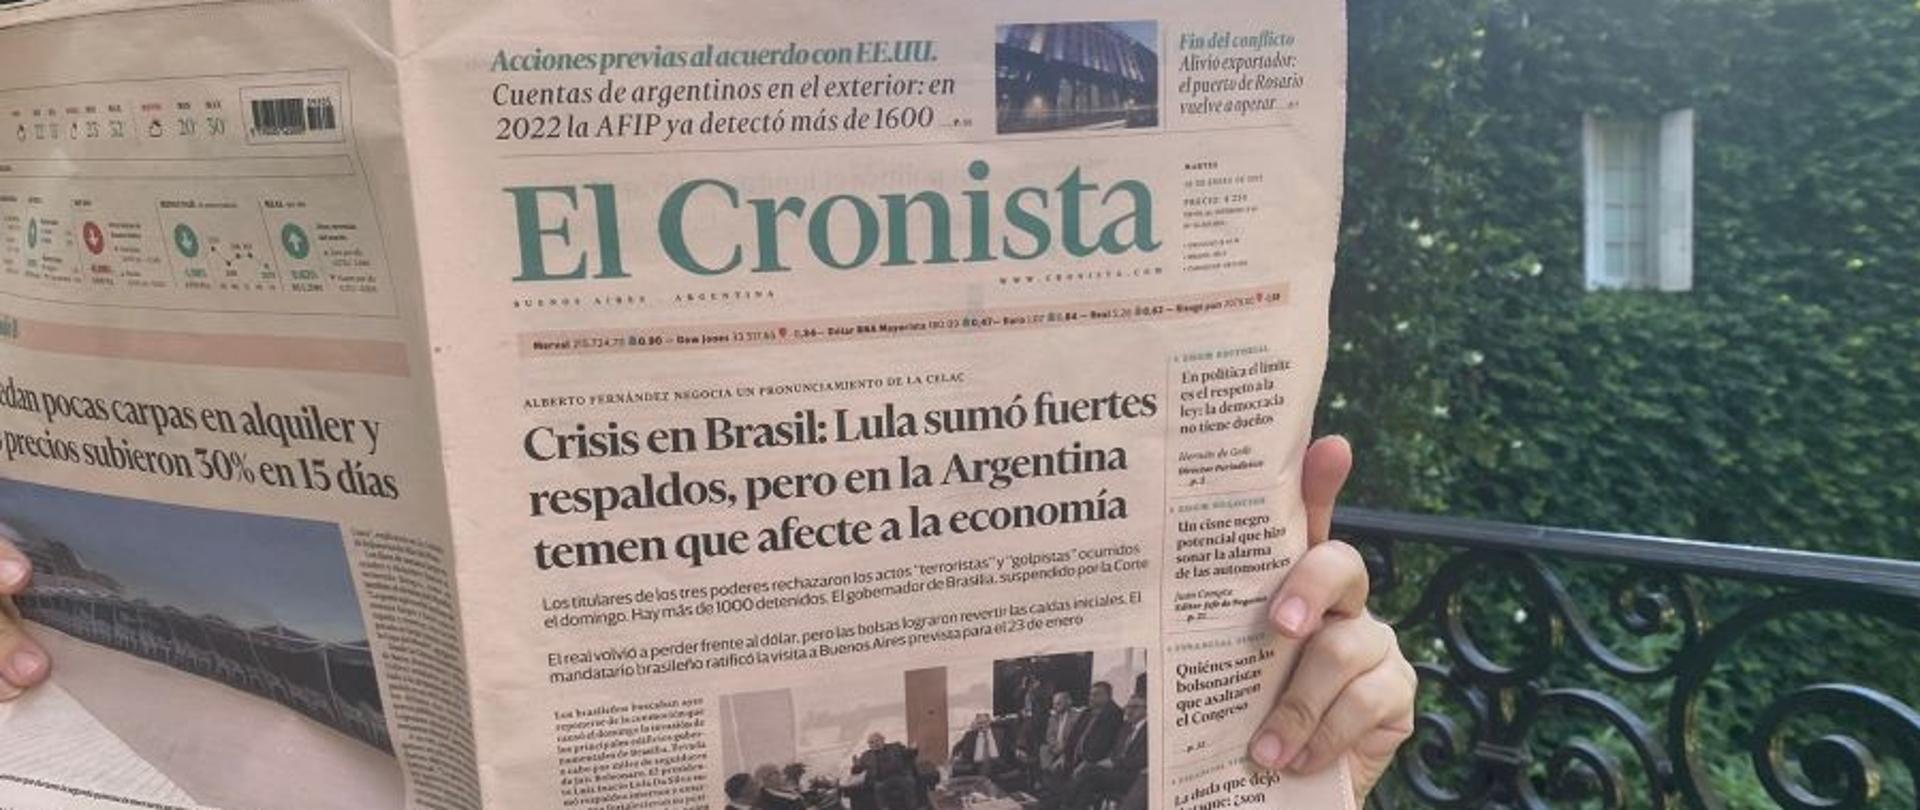 Codzienna gazeta biznesowa wydawana w Buenos Aires „El Cronista” opublikowała artykuł o polskiej ekonomii i perspektywach współpracy gospodarczej Polski z Argentyną.
